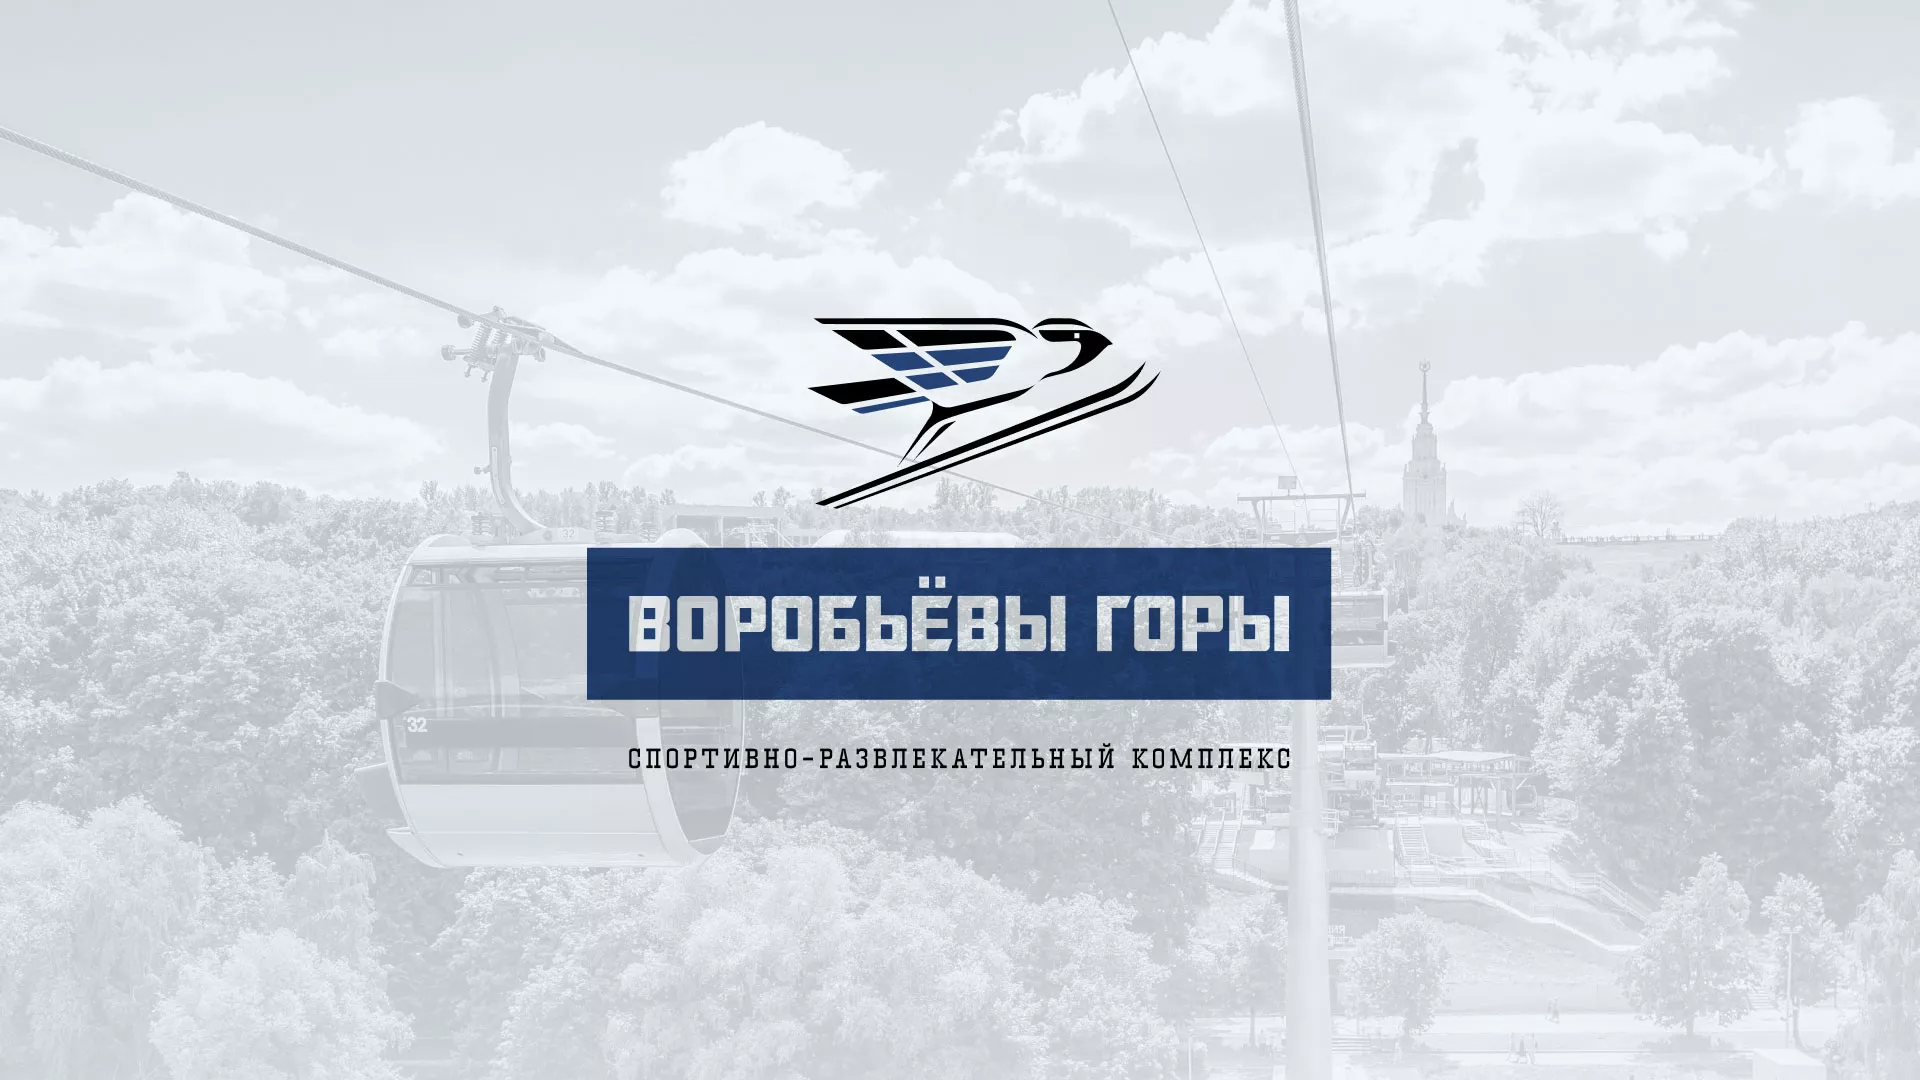 Разработка сайта в Шарыпово для спортивно-развлекательного комплекса «Воробьёвы горы»